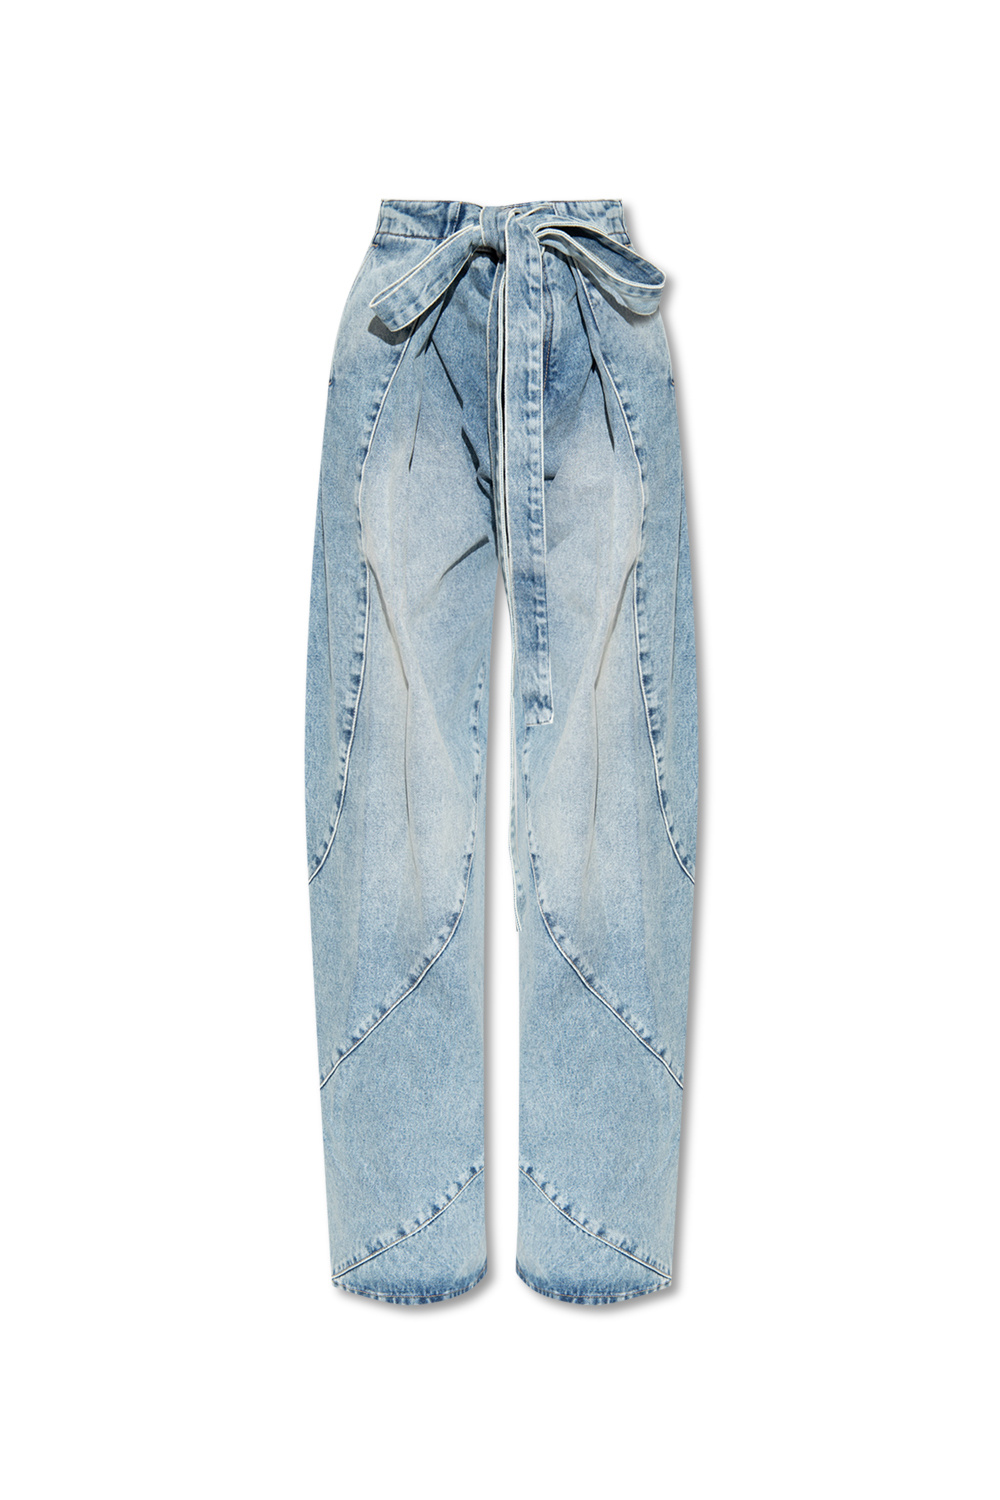 The Attico Hazen jeans